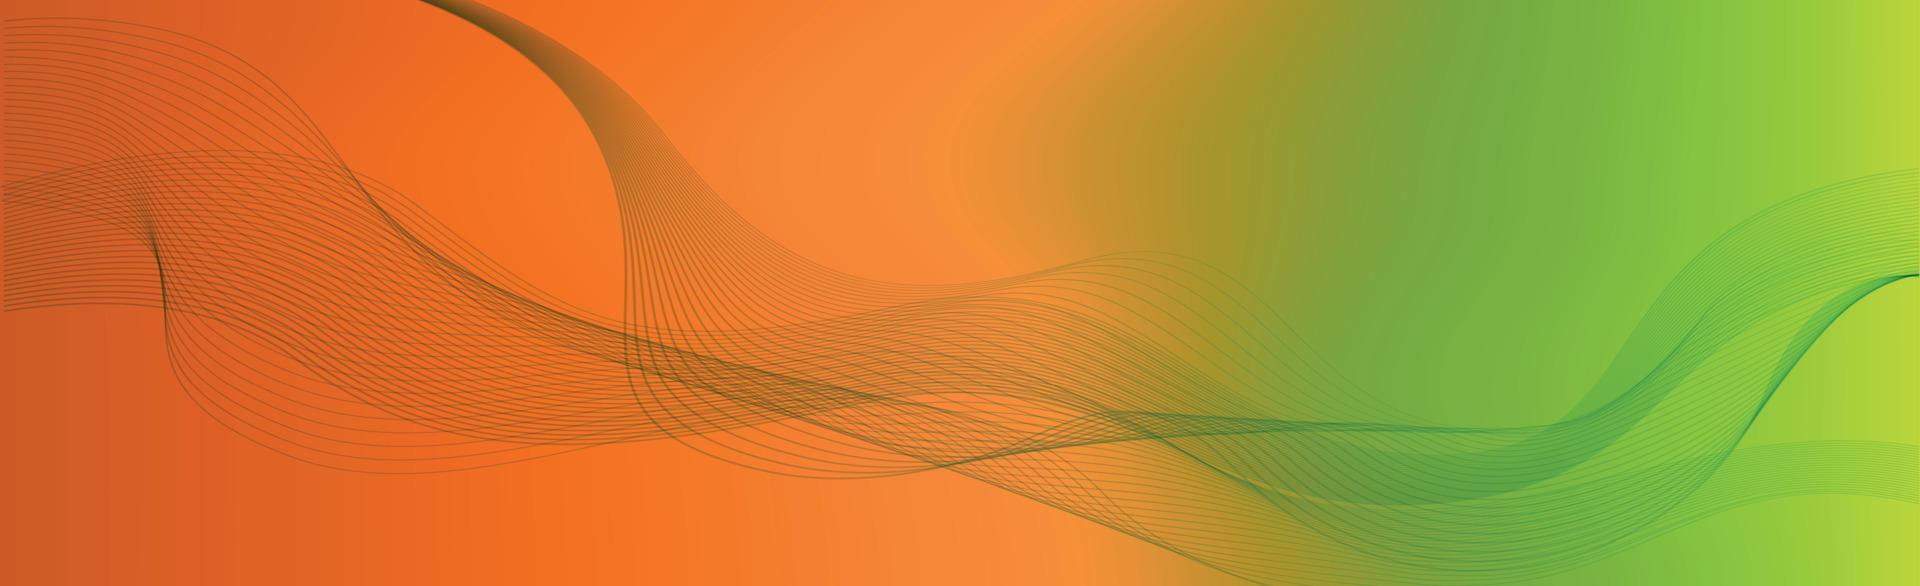 sfondo web astratto panoramico gradiente arancio rosso - vettore